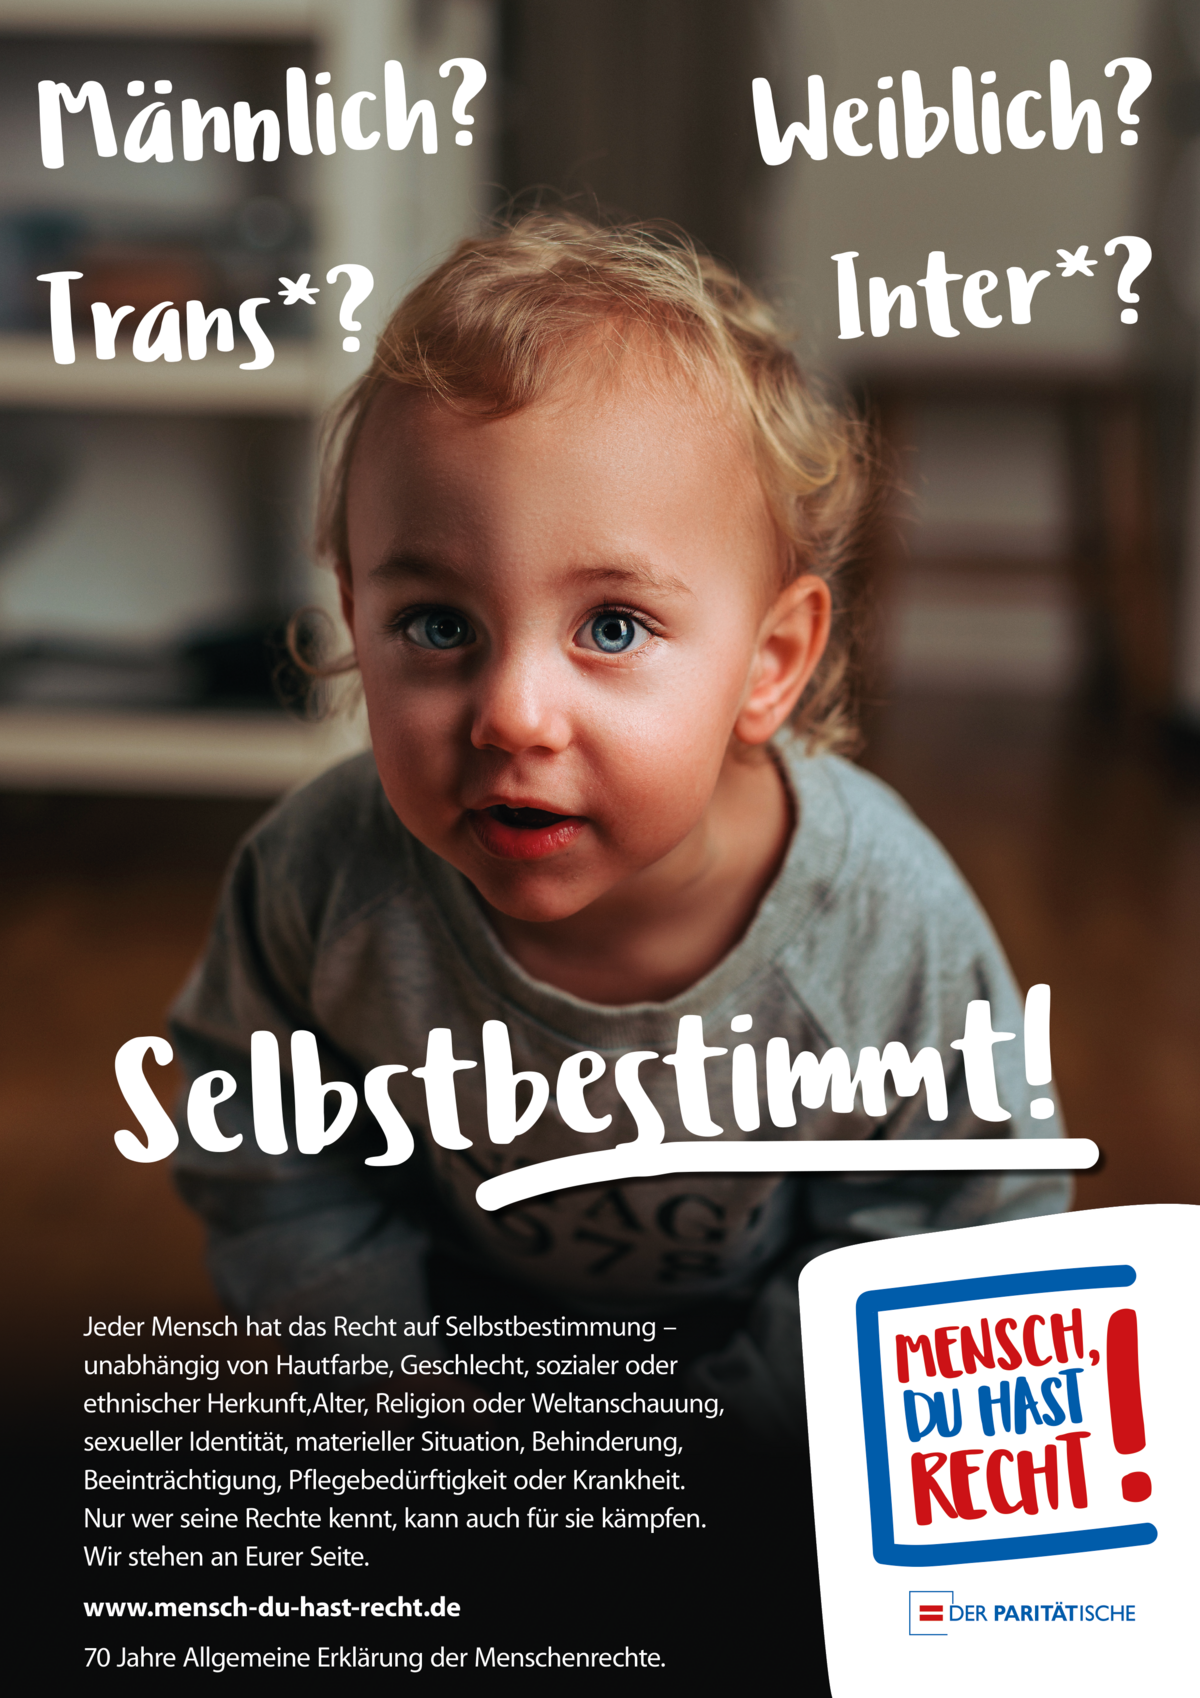 Plakat mit einem Kleinkind und der Aufschrift "Männlich? Weiblich? Trans*? Inter? Selbstbestimmt!" und einem Logo mit dem Text "Mensch, Du hast Recht!".